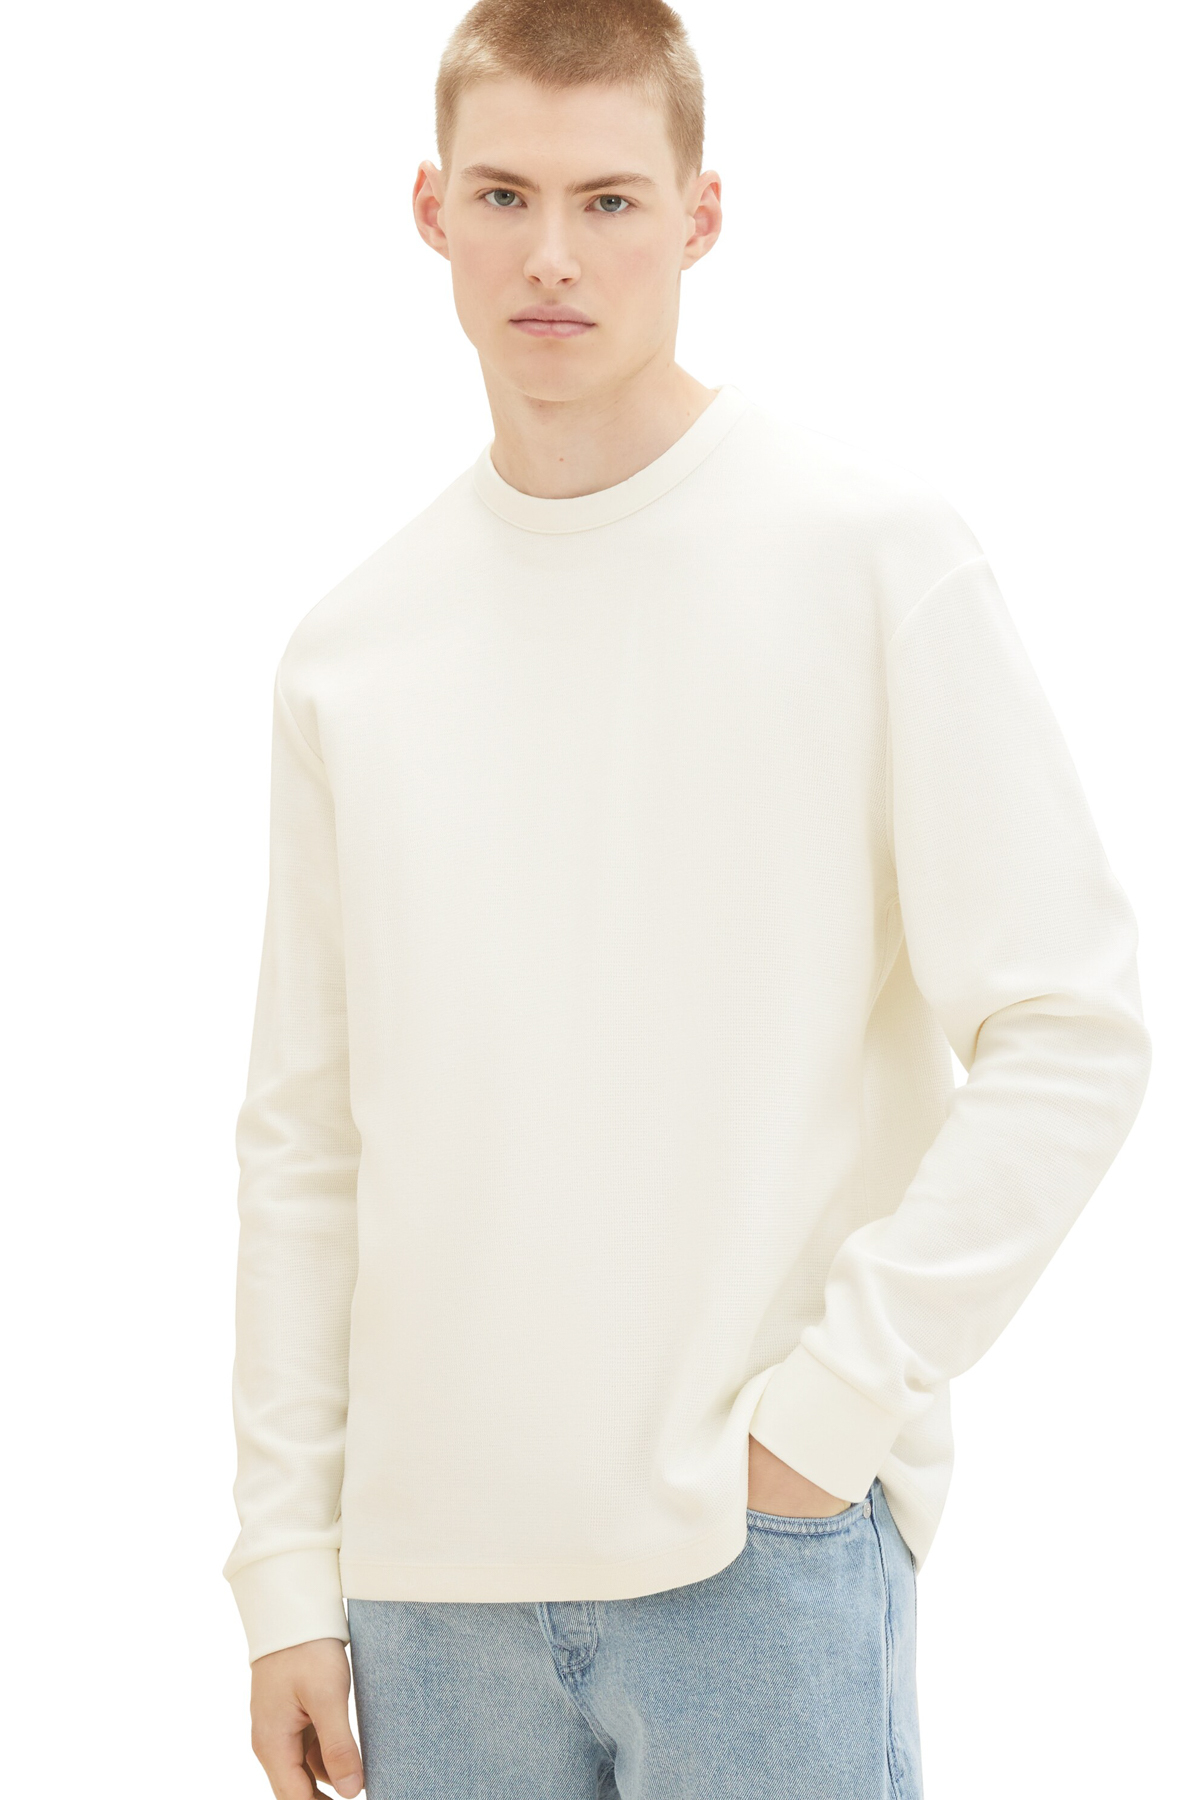 Свитер - Белый - Классический крой Tom Tailor Denim, белый футболка tom tailor однотонная размер m белый